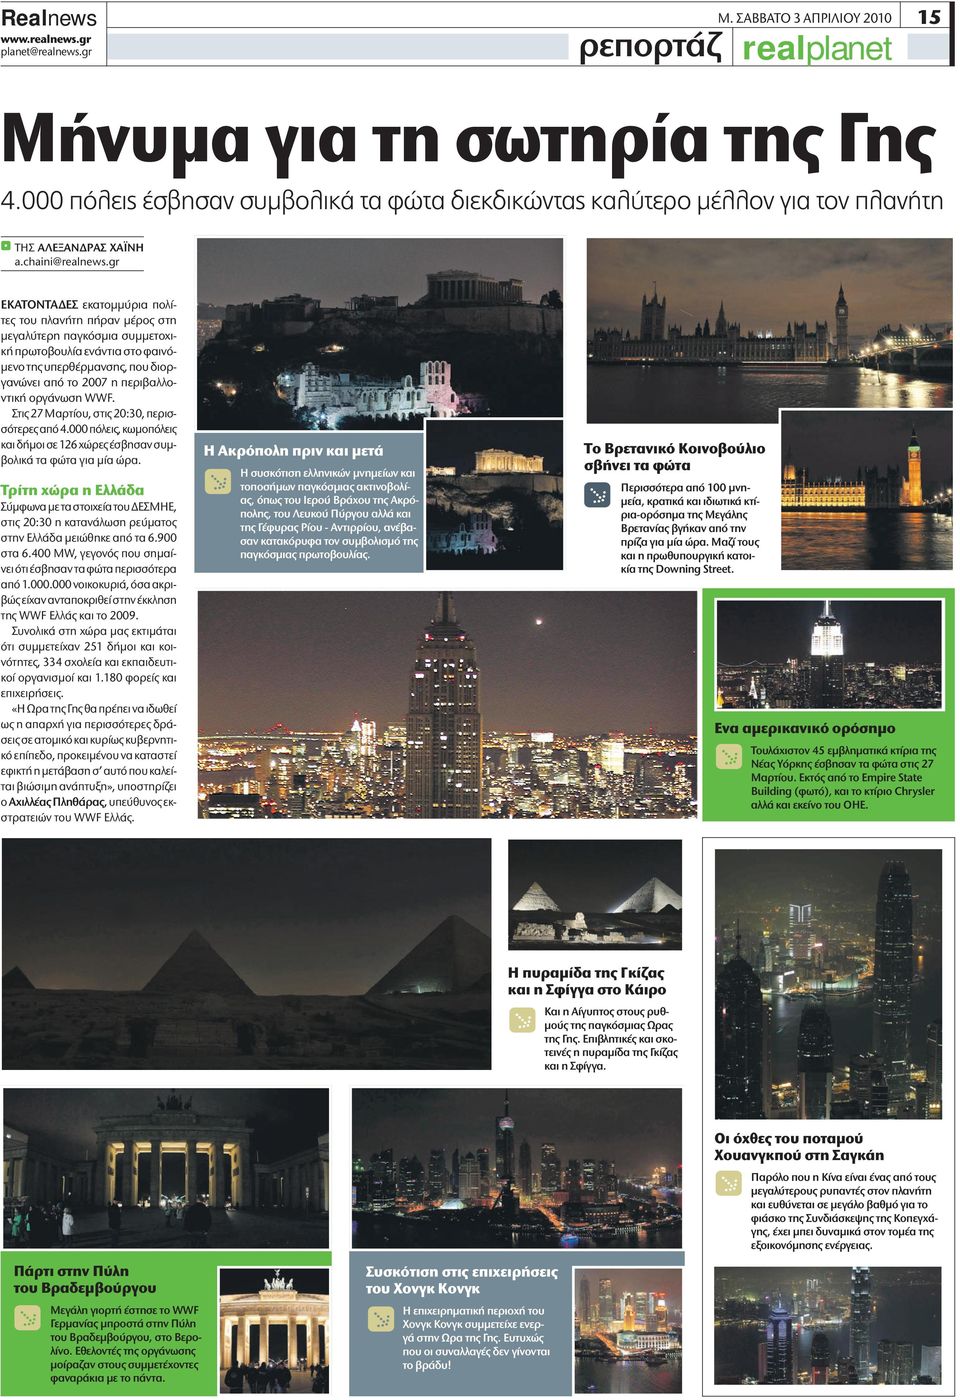 οργάνωση WWF. Στις 27 Μαρτίου, στις 20:30, περισσότερες από 4.000 πόλεις, κωμοπόλεις και δήμοι σε 126 χώρες έσβησαν συμβολικά τα φώτα για μία ώρα.